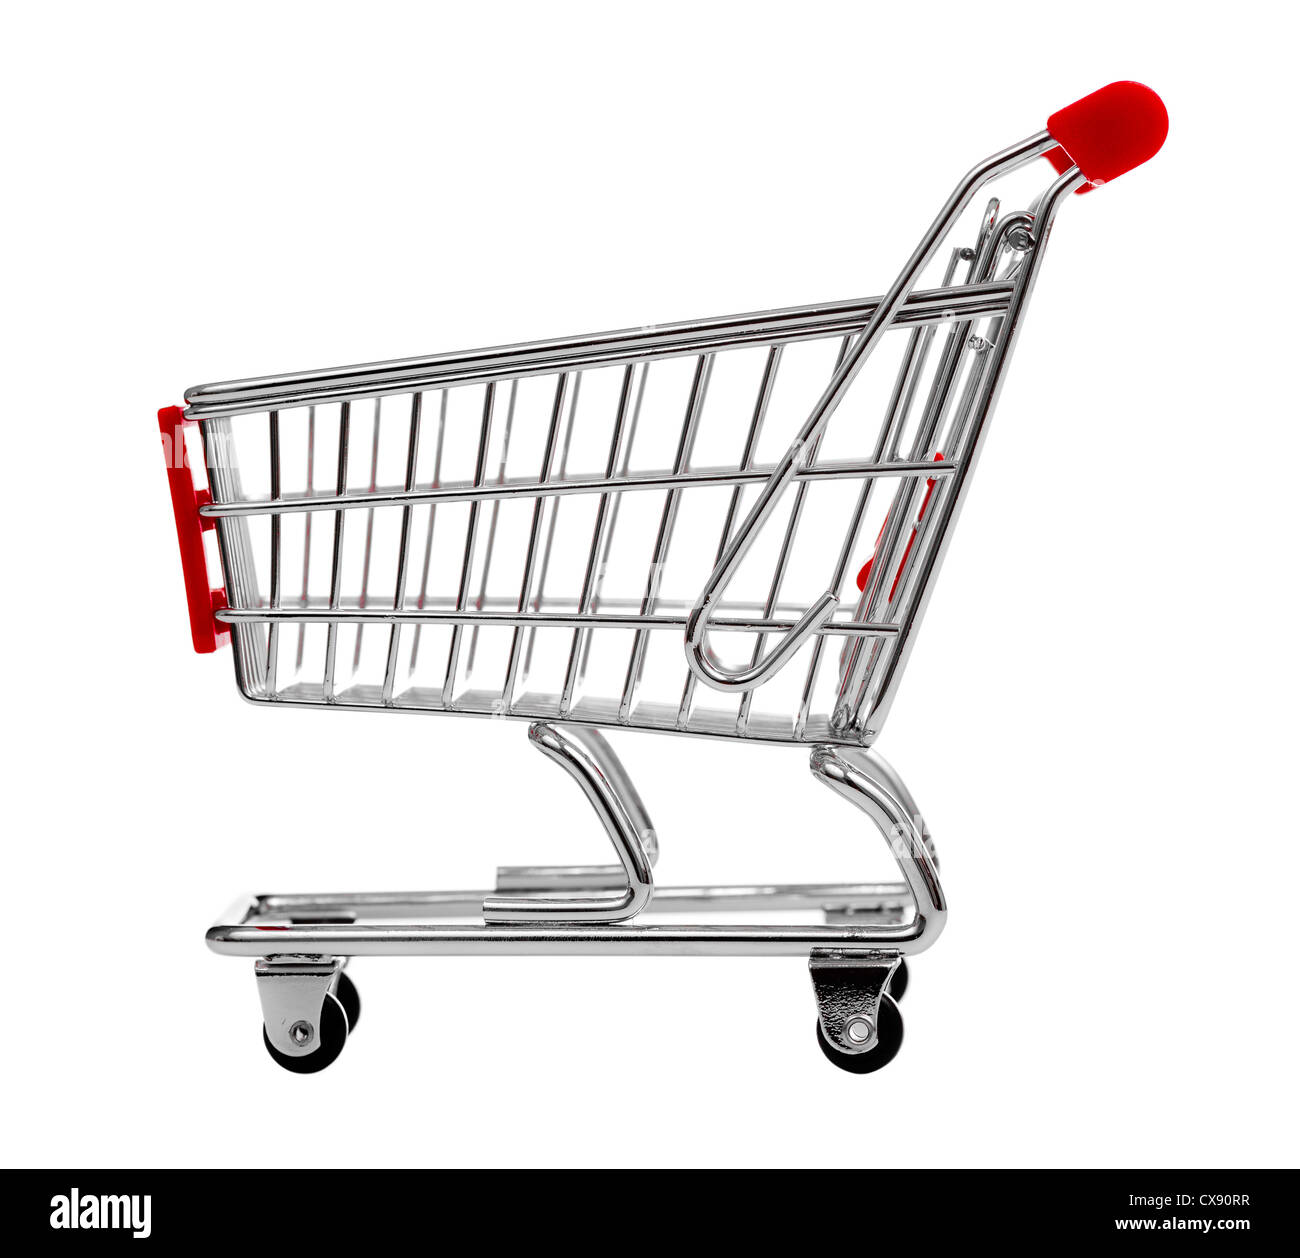 shopping cart isolated on white Stock Photo